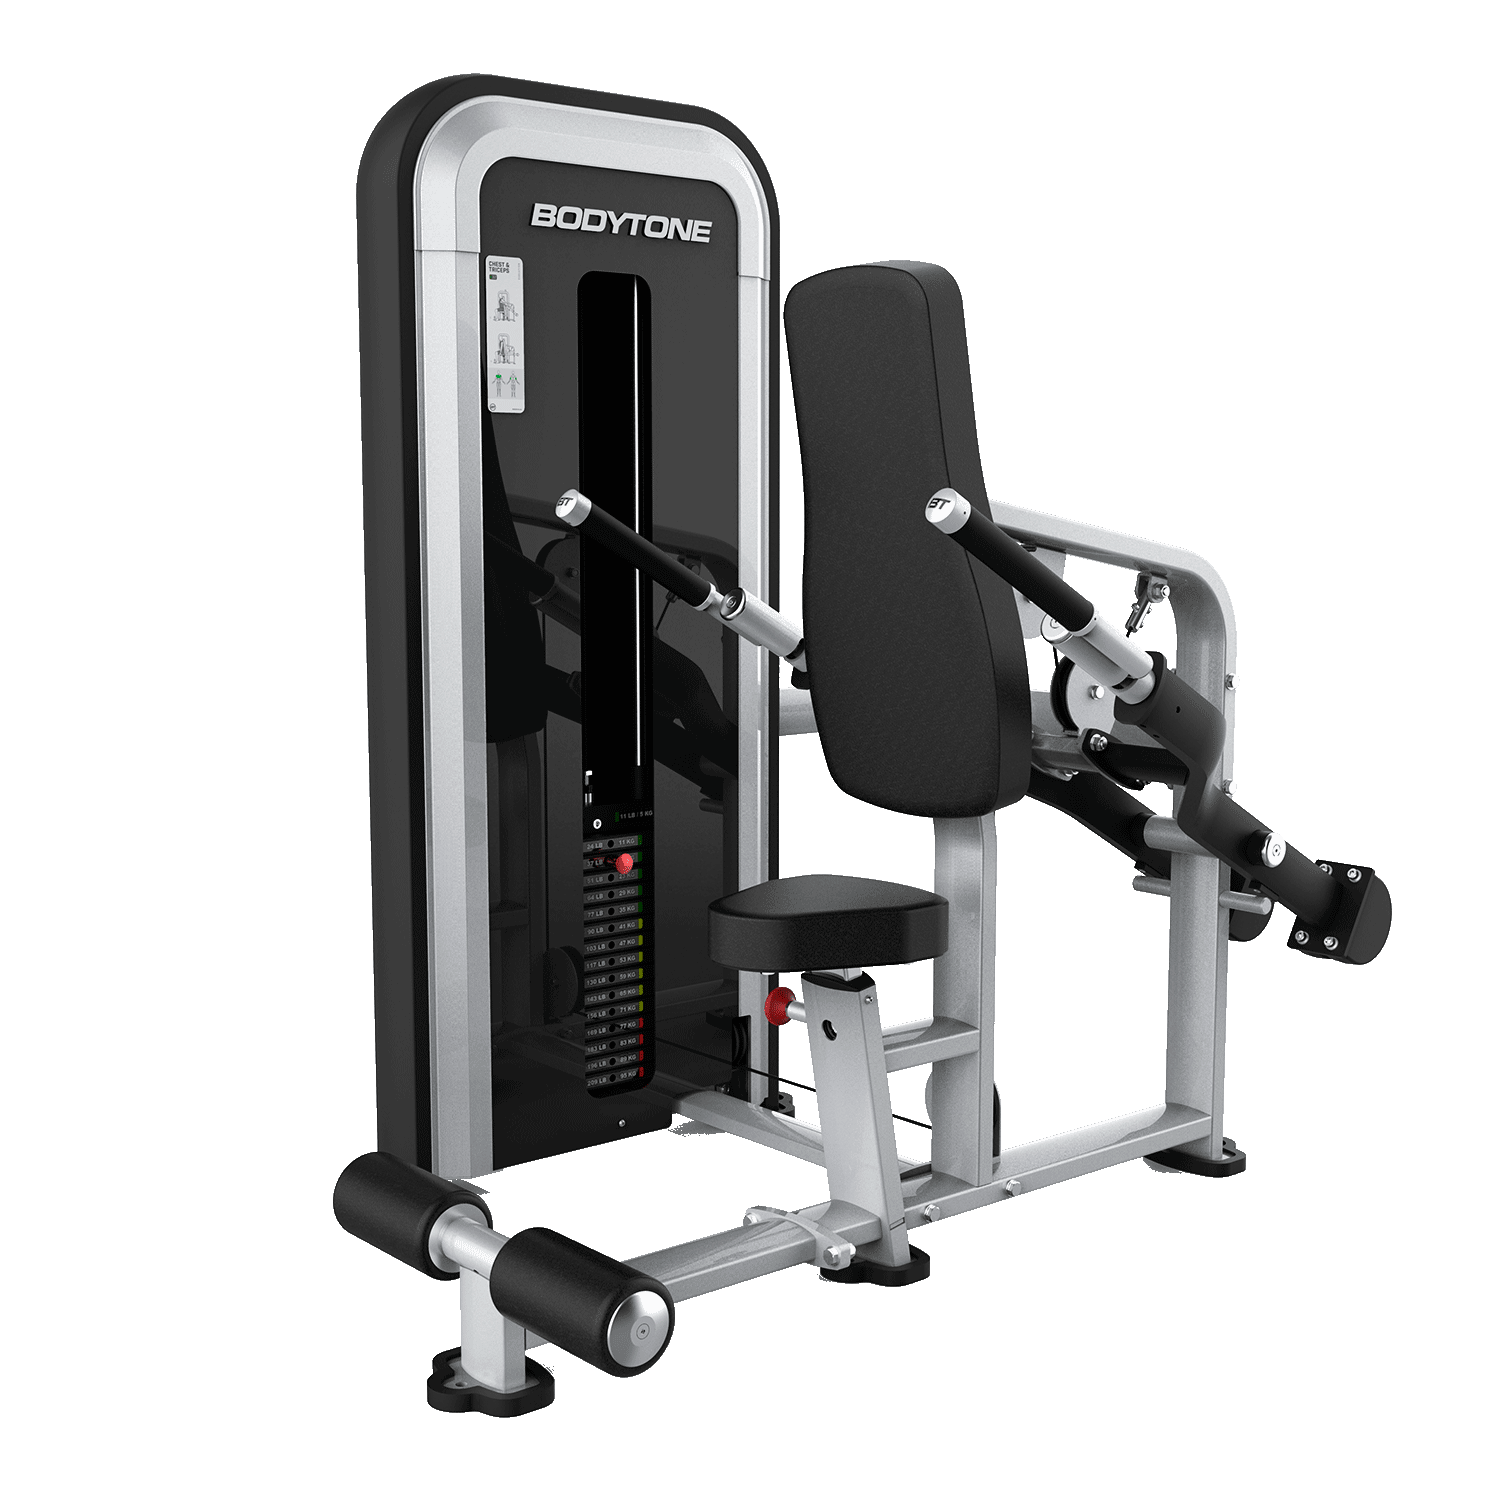 Sportech Fitness - Comprar Máquinas y Accesorios Fitness – Sportech fitness